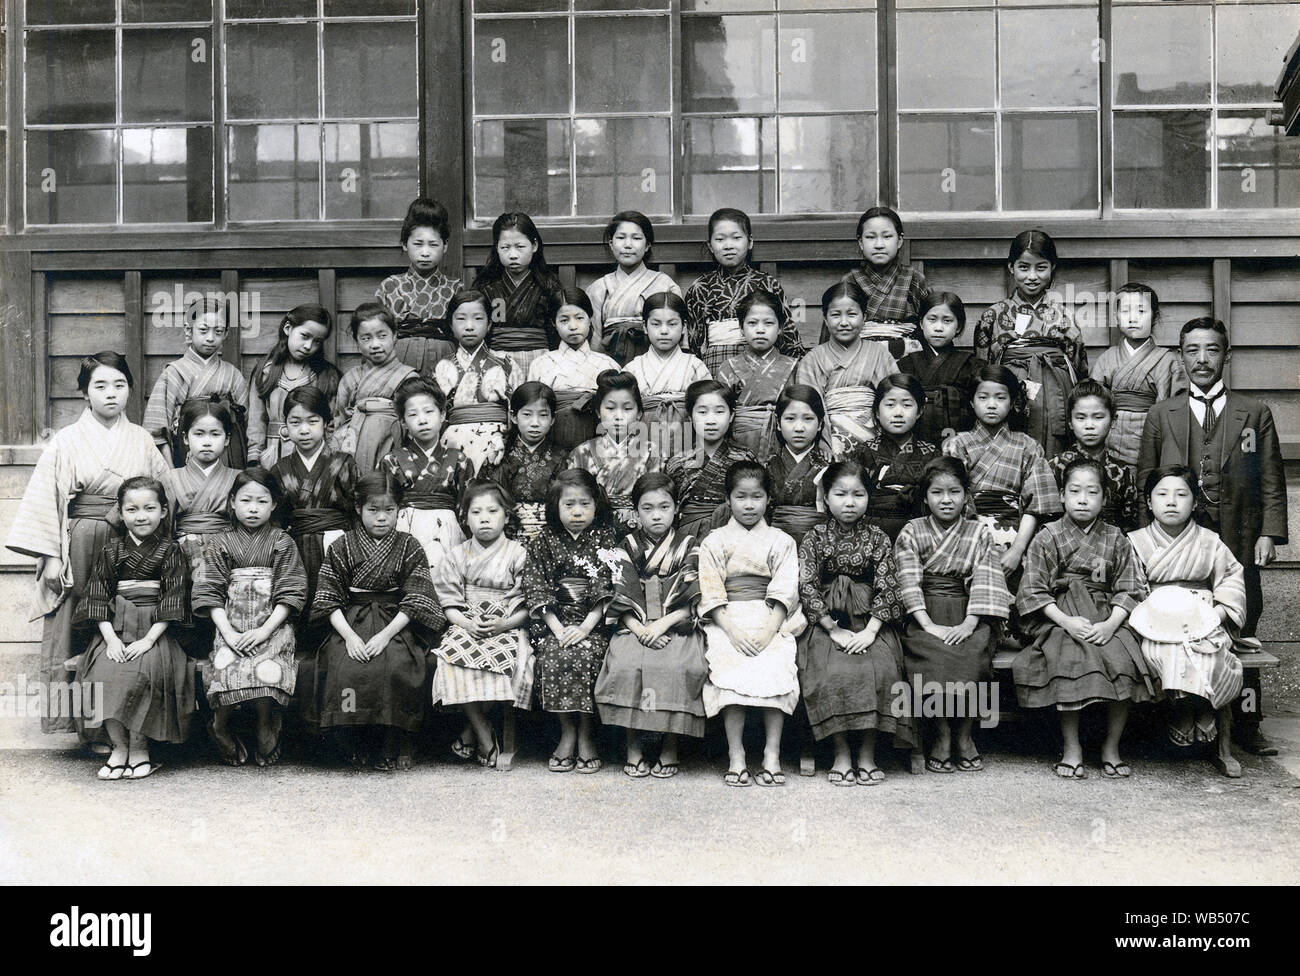 [1910s Japan - Japanische Grundschule Mädchen] - Grundschule Mädchen im Kimono und Hakama für eine formelle Gruppe Foto dar. 20. Jahrhundert vintage Silbergelatineabzug. Stockfoto